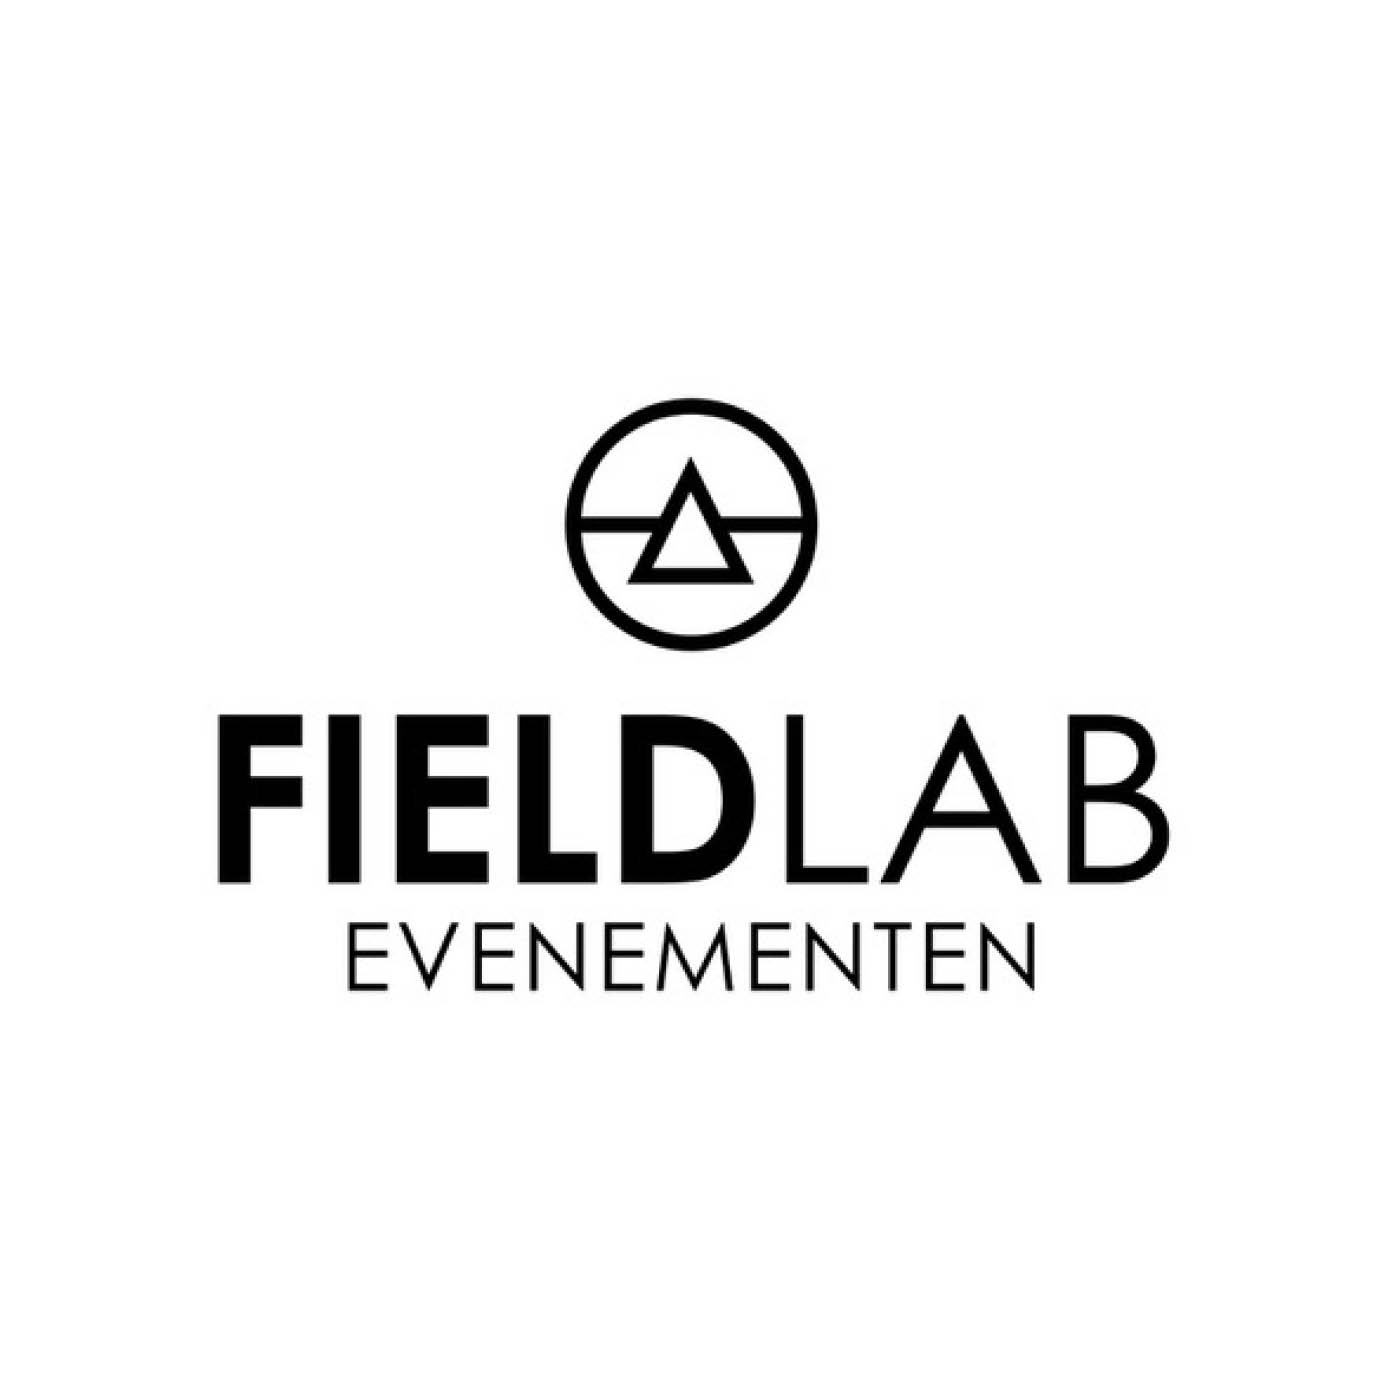 Logo Fieldlabevenementen